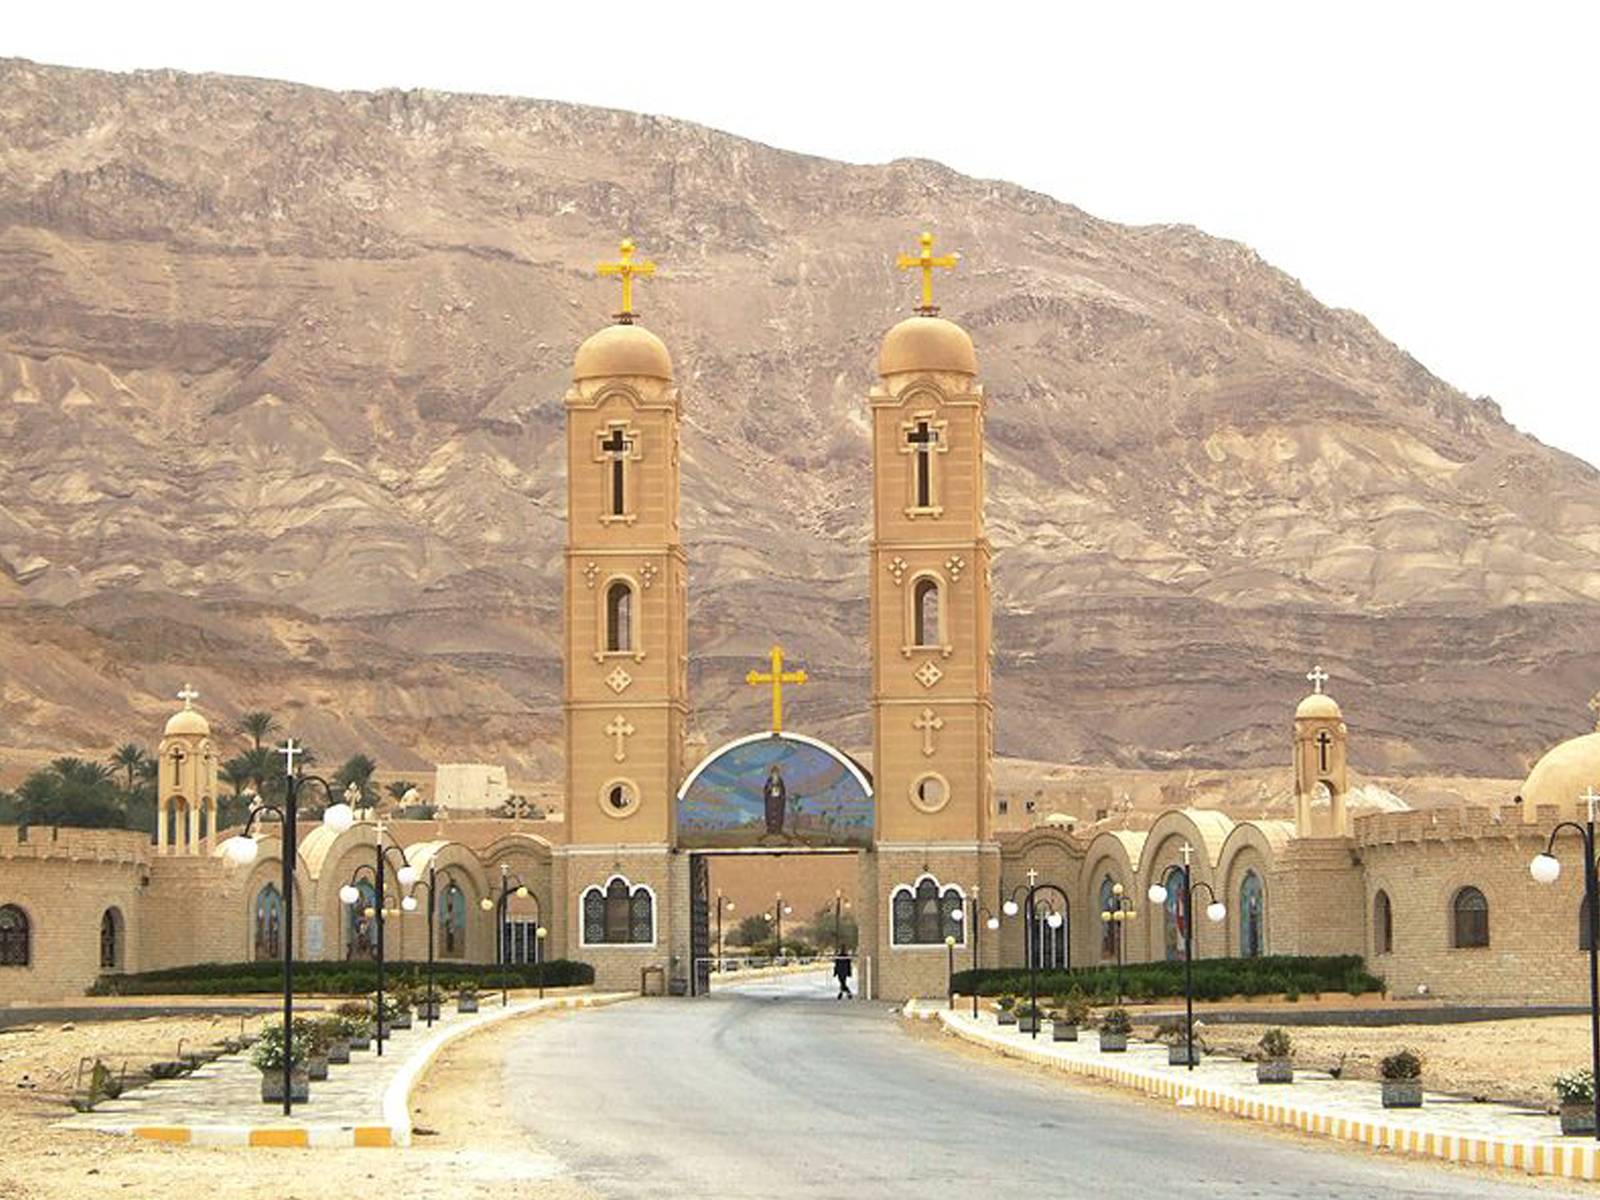 Kloster i Egypten, där Jesus passerade som flykting.